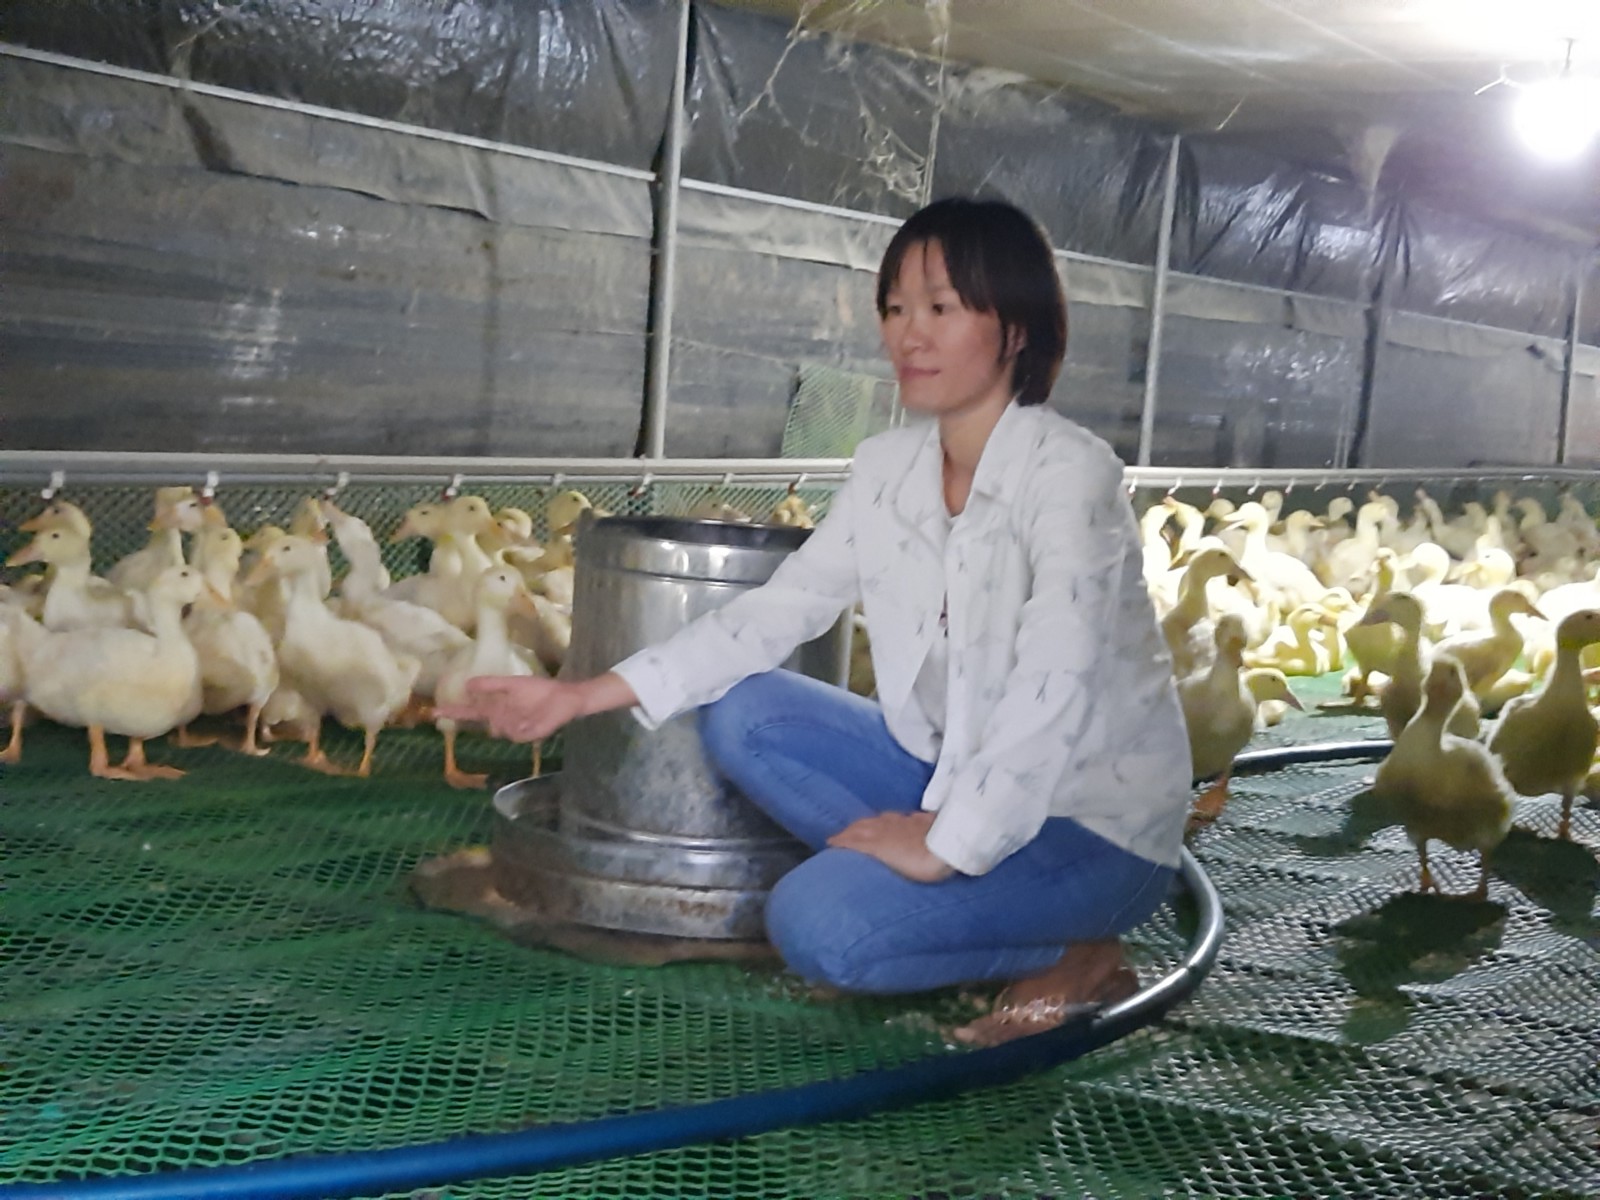 Doanh nghiệp chăn nuôi đón đầu cơ hội nhờ áp dụng mô hình 3F  Kinh doanh   Vietnam VietnamPlus